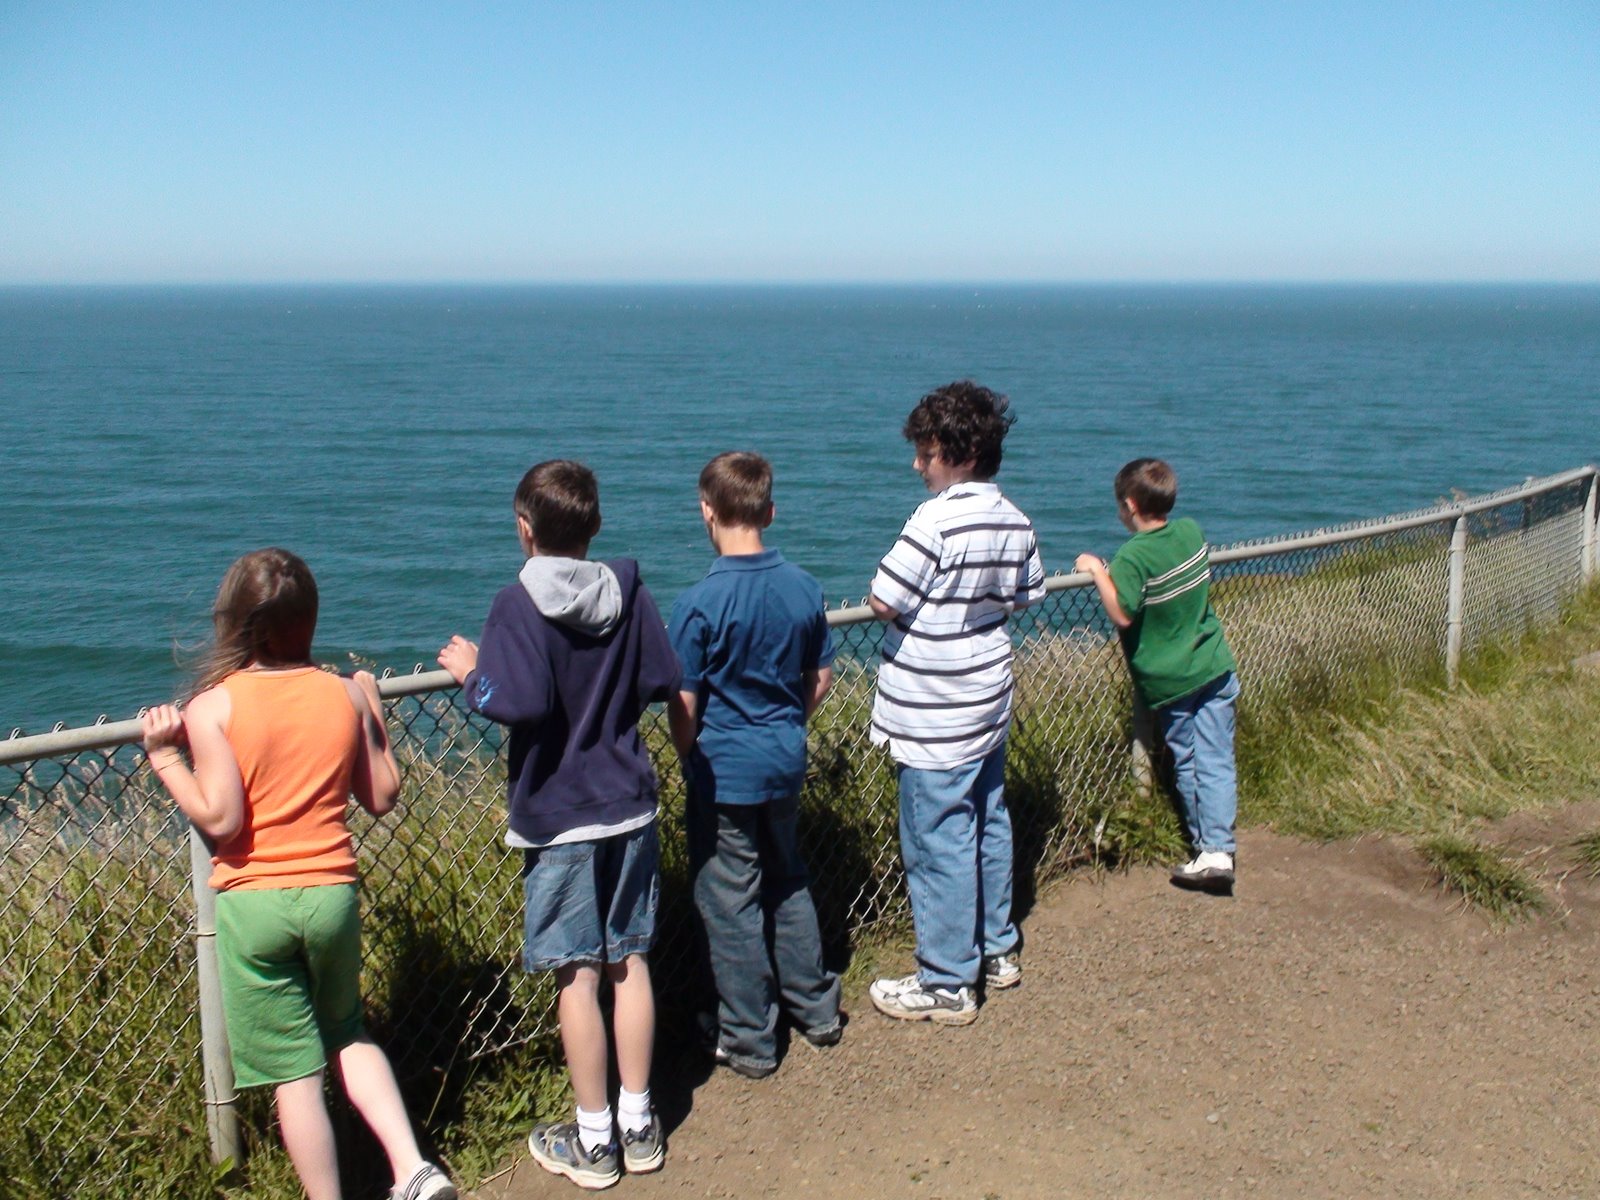 [Kids+looking+out+at+ocean.JPG]